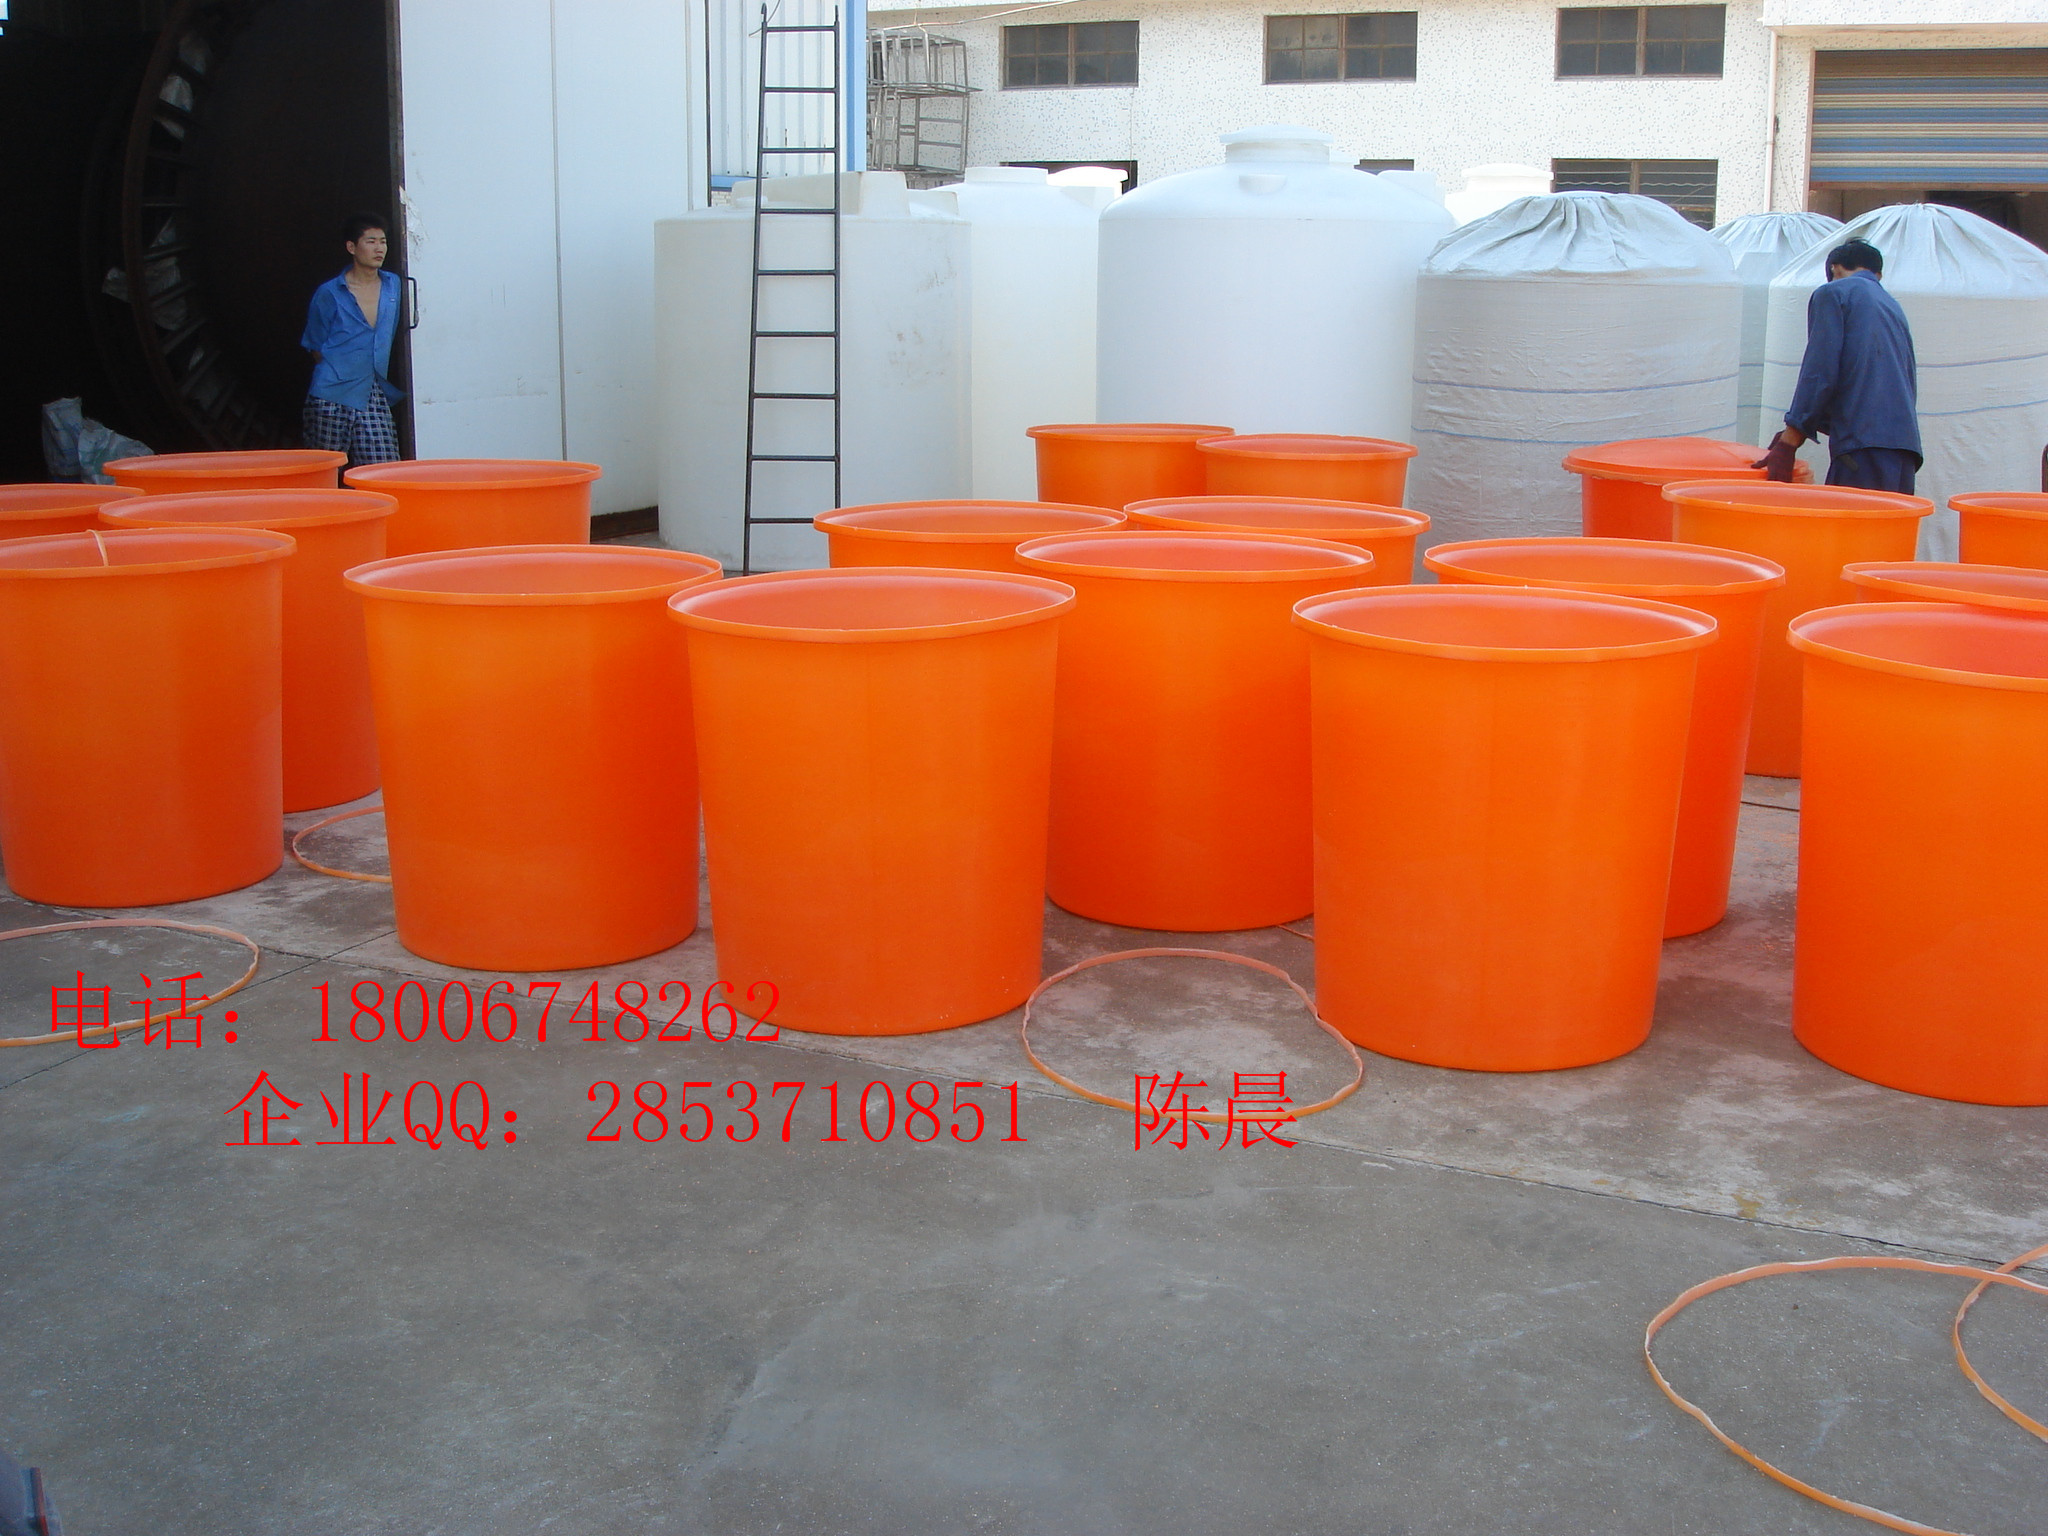 宁波市友特25L塑料圆桶 pe塑料桶厂家